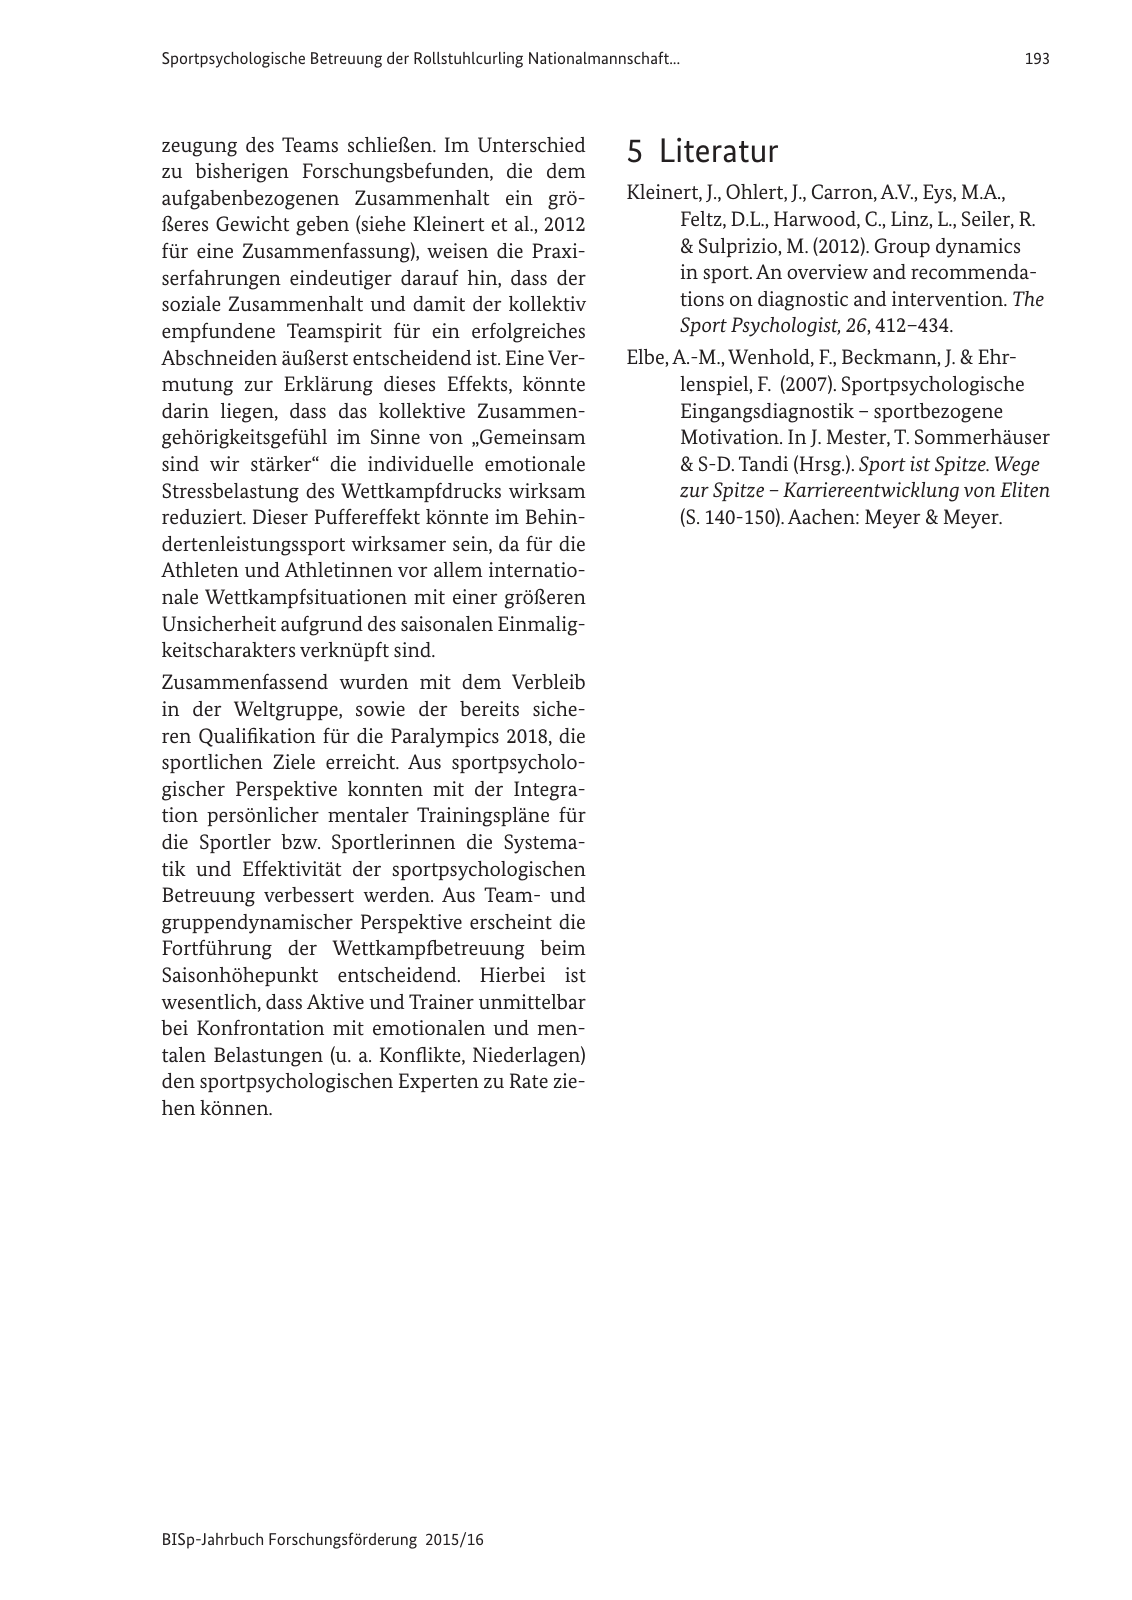 Vorschau BISp-Jahrbuch Forschungsförderung 2015/16 Seite 195